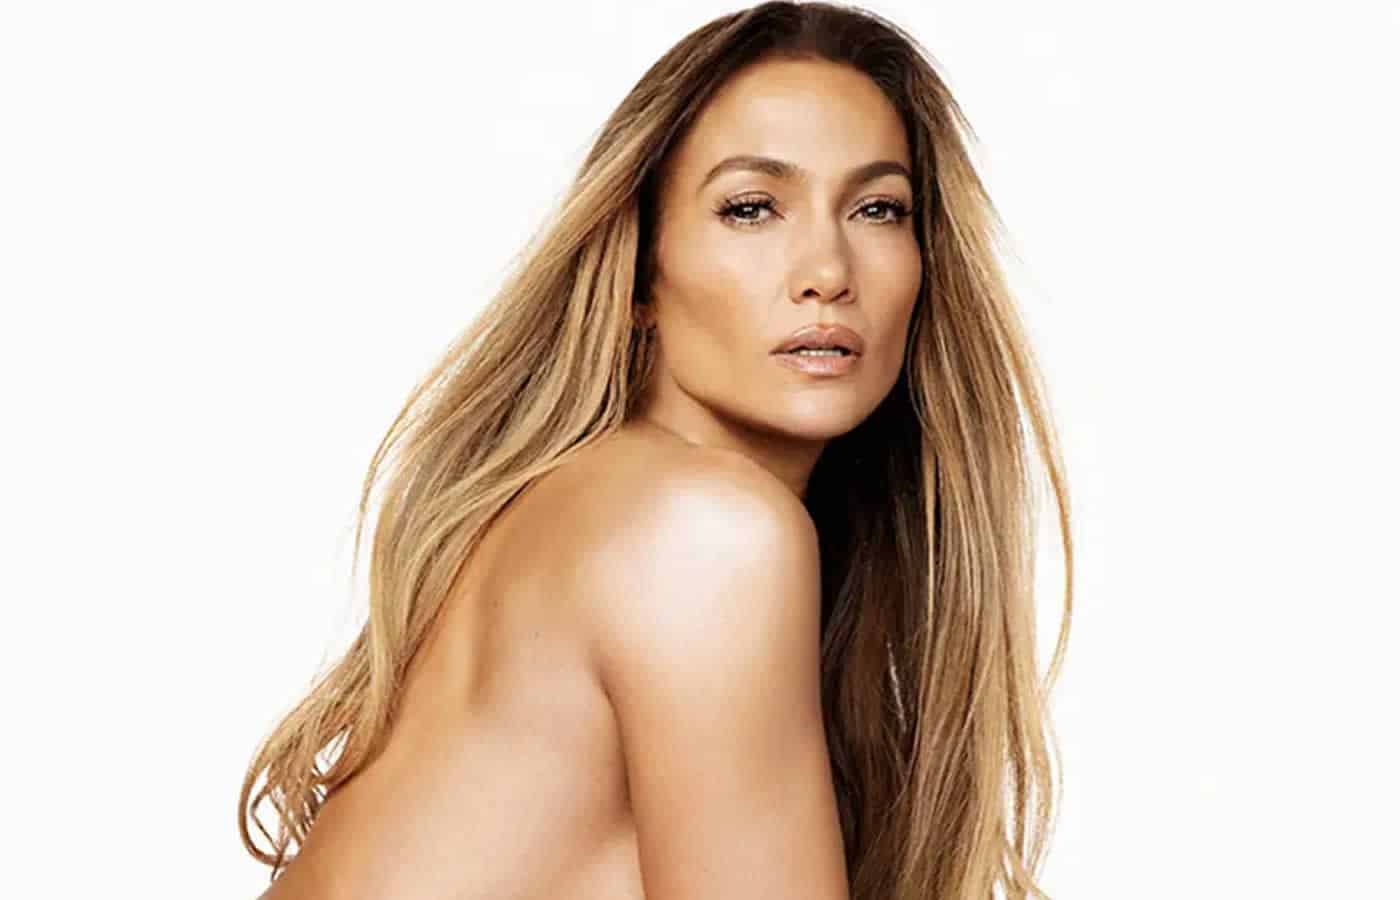 Αυτά τα γενέθλια για την Λατίνα super star Jennifer Lopez είναι μοναδικά, αφού είναι πλέον παντρεμένη, βρίσκεται στο Παρίσι μαζί με τον